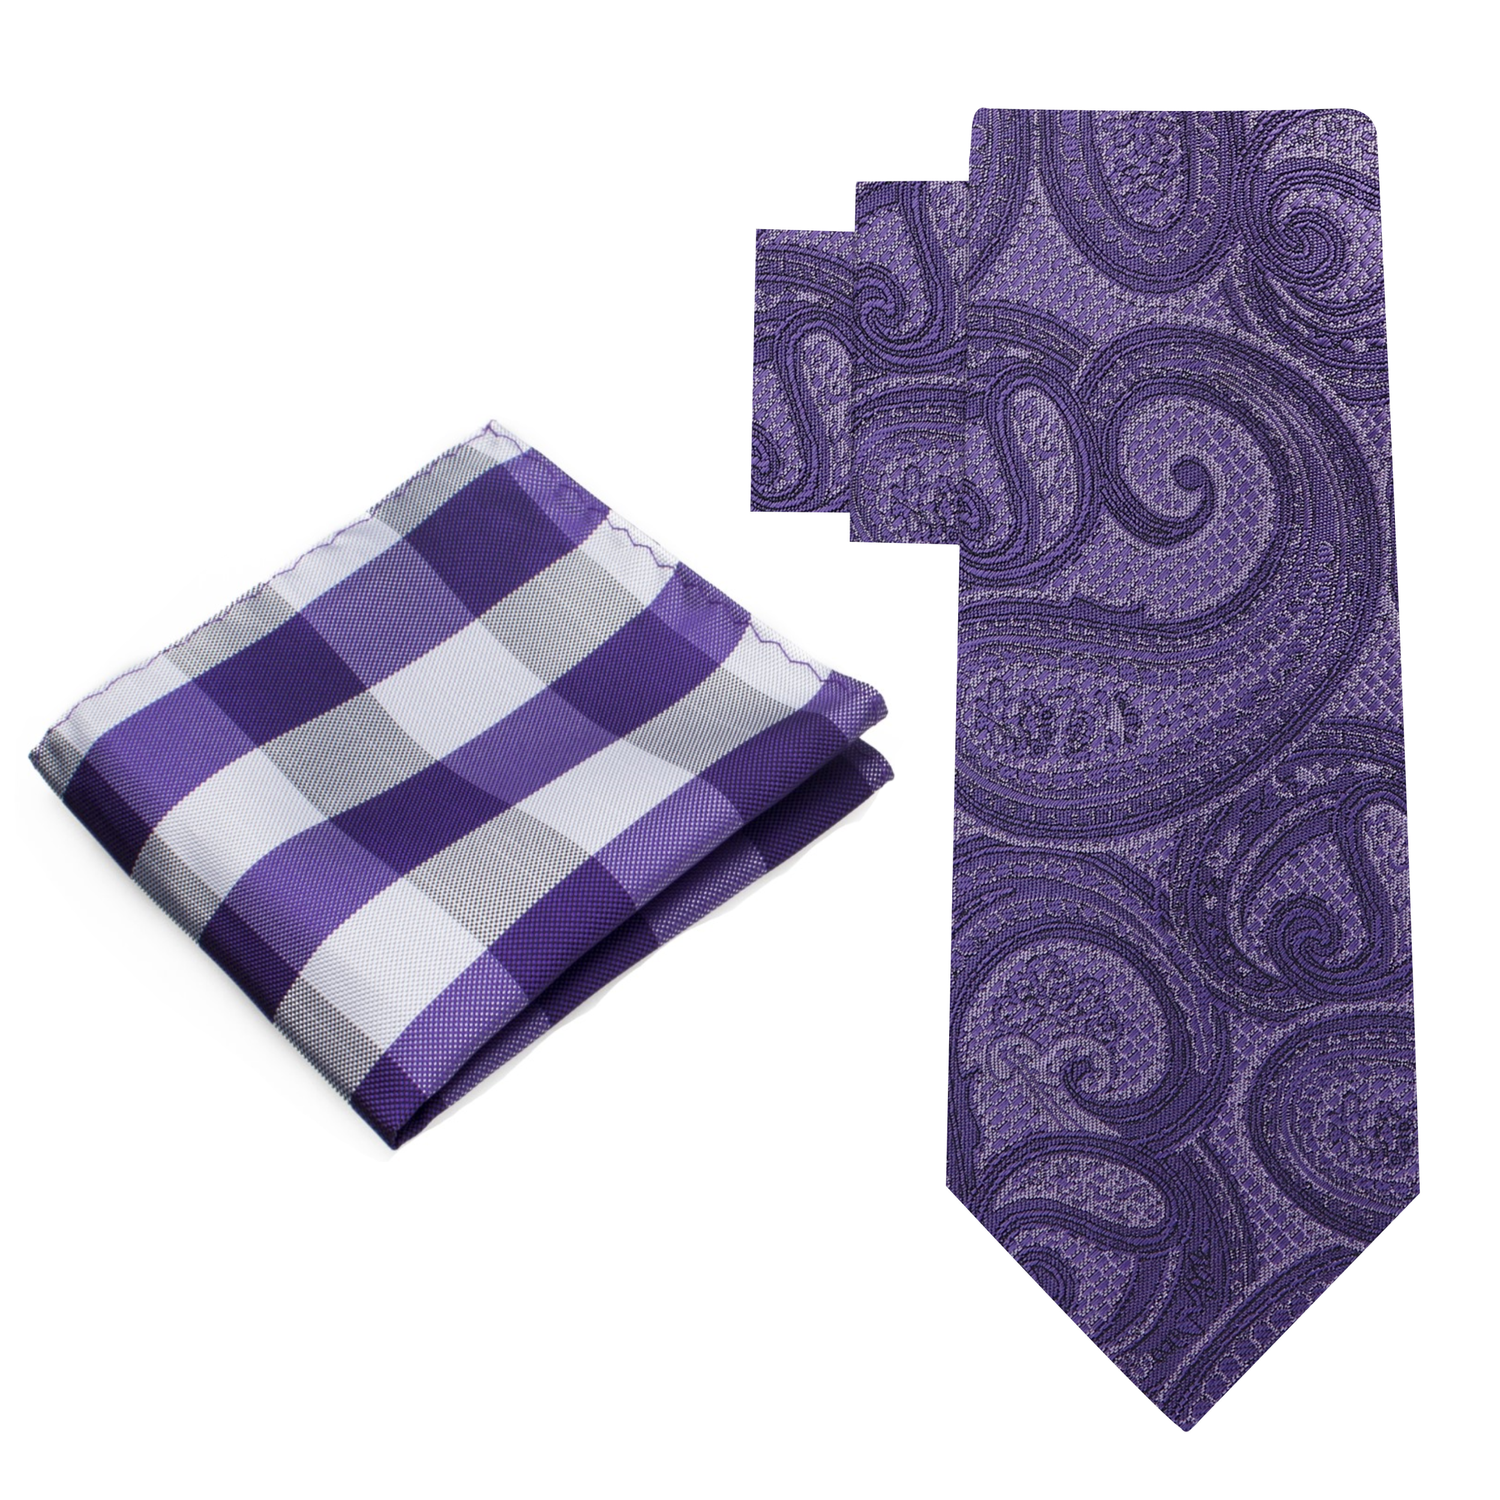 Alt View: Purple Paisley Necktie and Grey, Purple Plaid Square